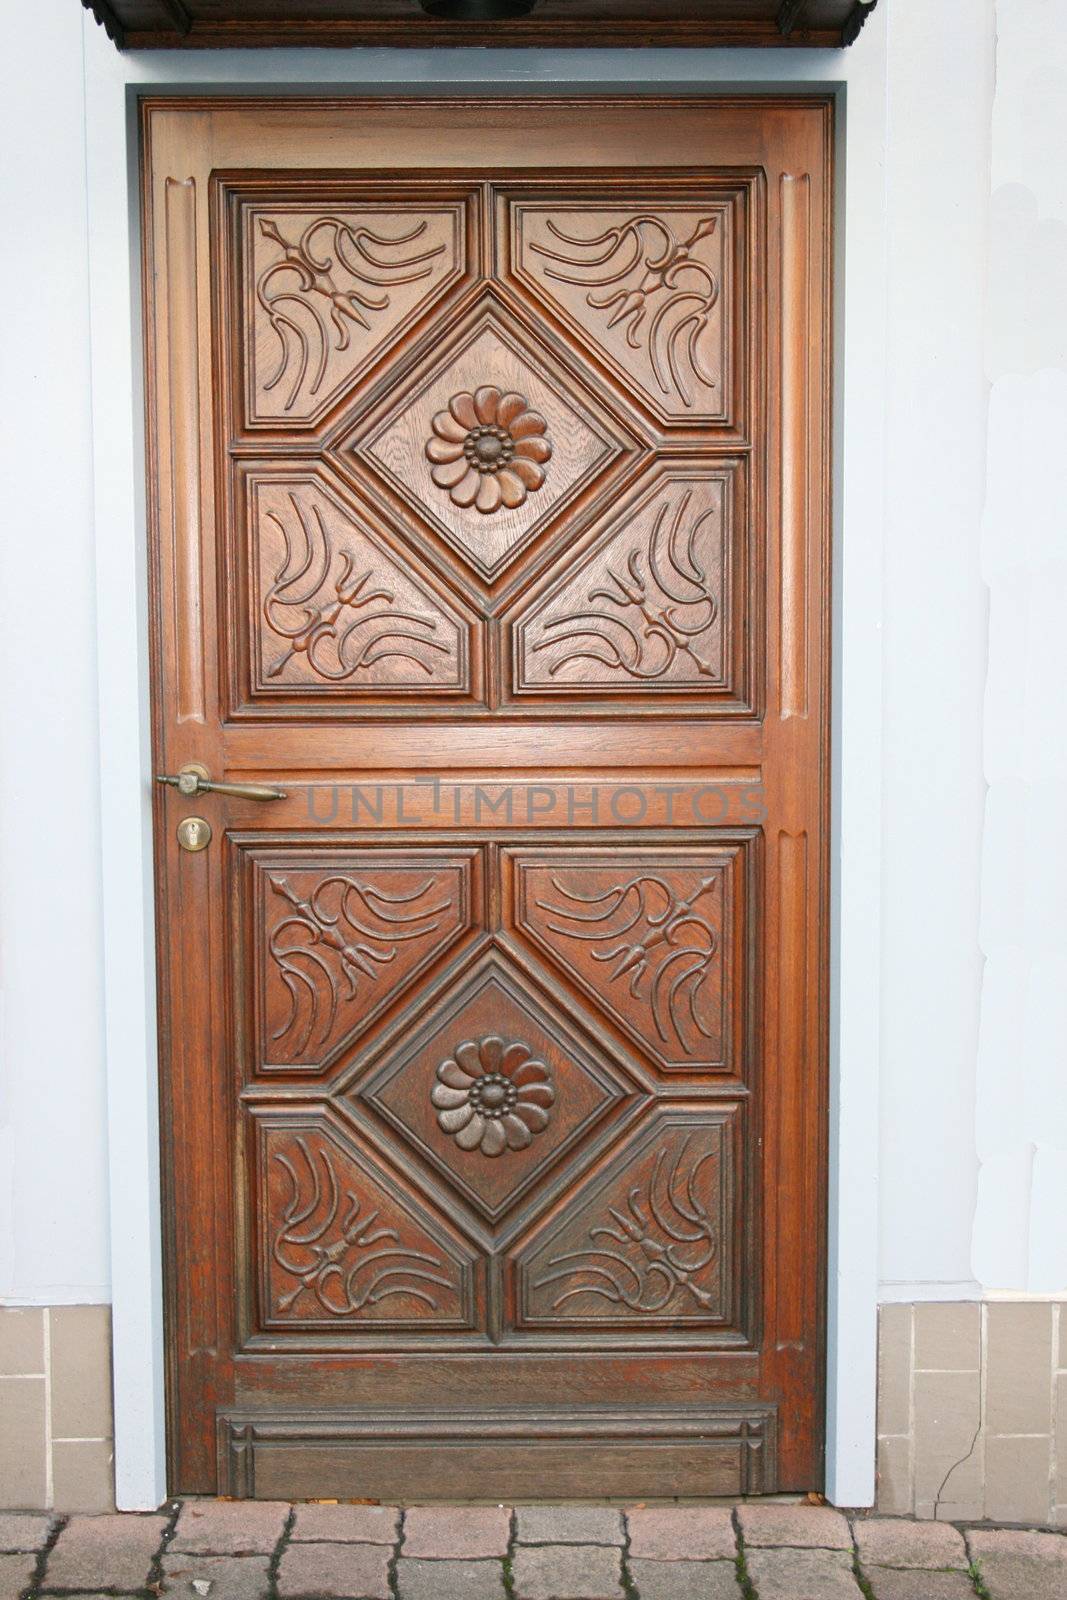 eine schöne verzierte Holzhaustür,mit Blumenmuster	
a beautiful carved wooden door, with flowers